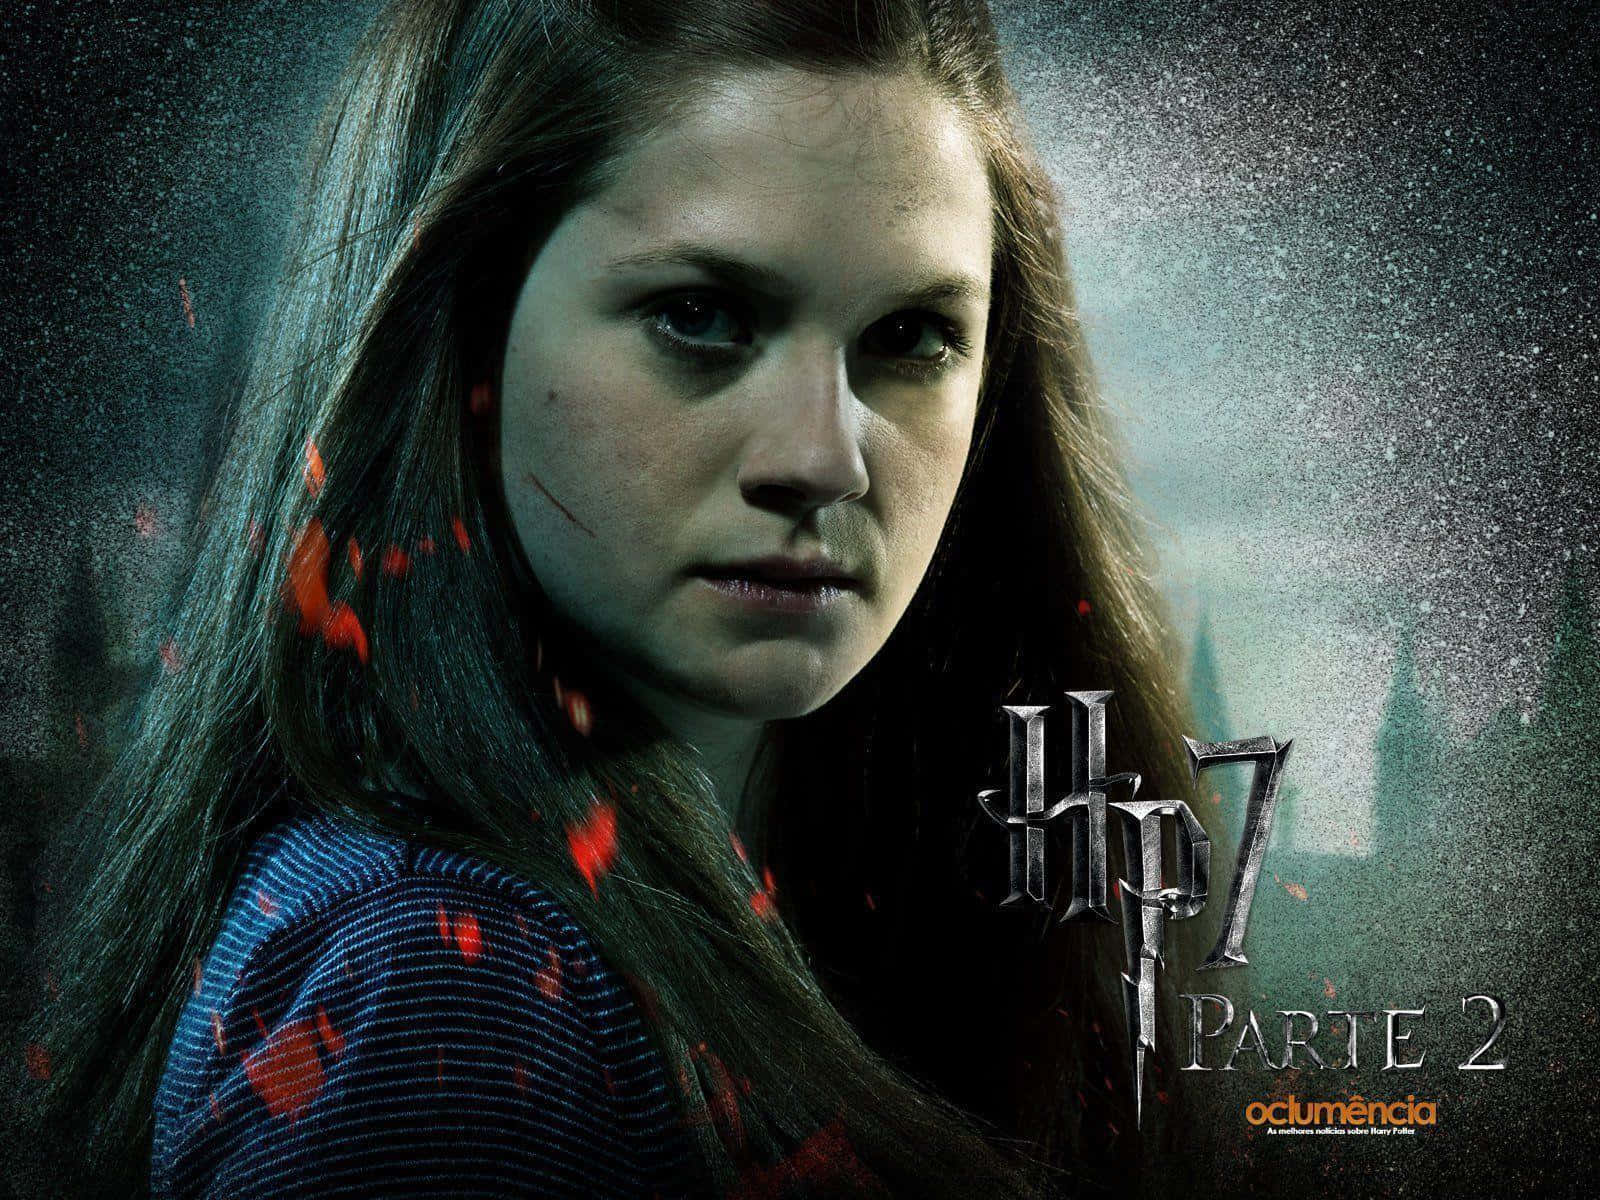 Ginny Weasley striking a pose in her Gryffindor Quidditch robes Wallpaper